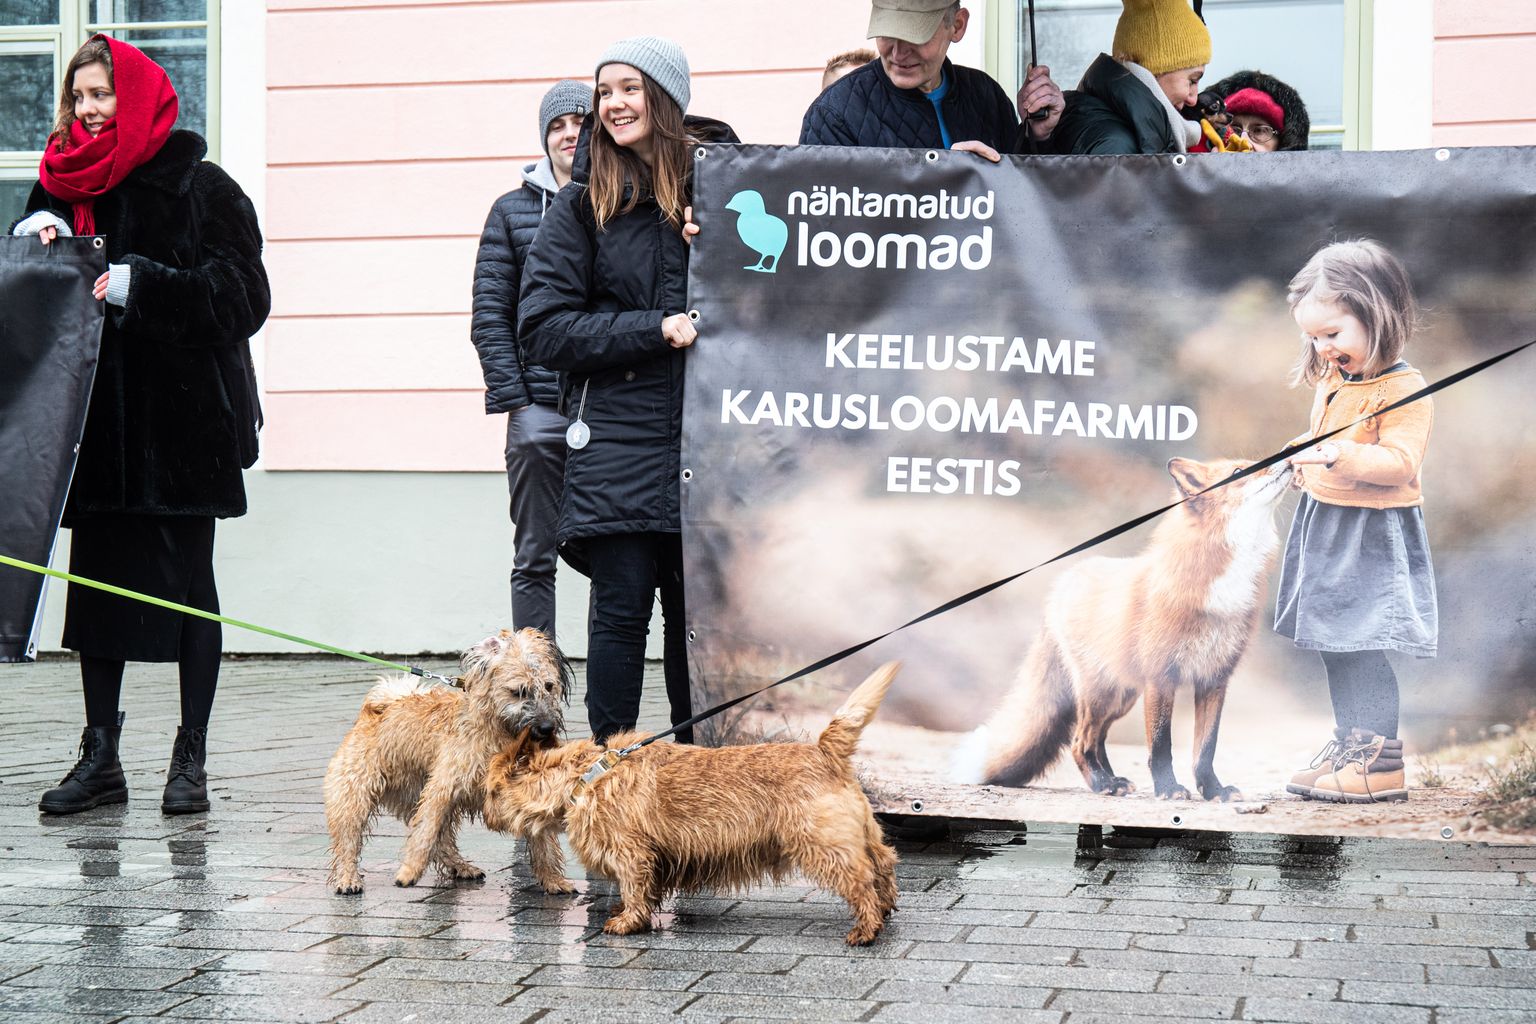 Tallinn, 30.01.2020. Loomakaitseorganisatsioon Nähtamatud Loomad andis karusloomafarmide sulgemiseks kogutud allkirjad üle Riigikogu esimees Henn Põlluaasale.